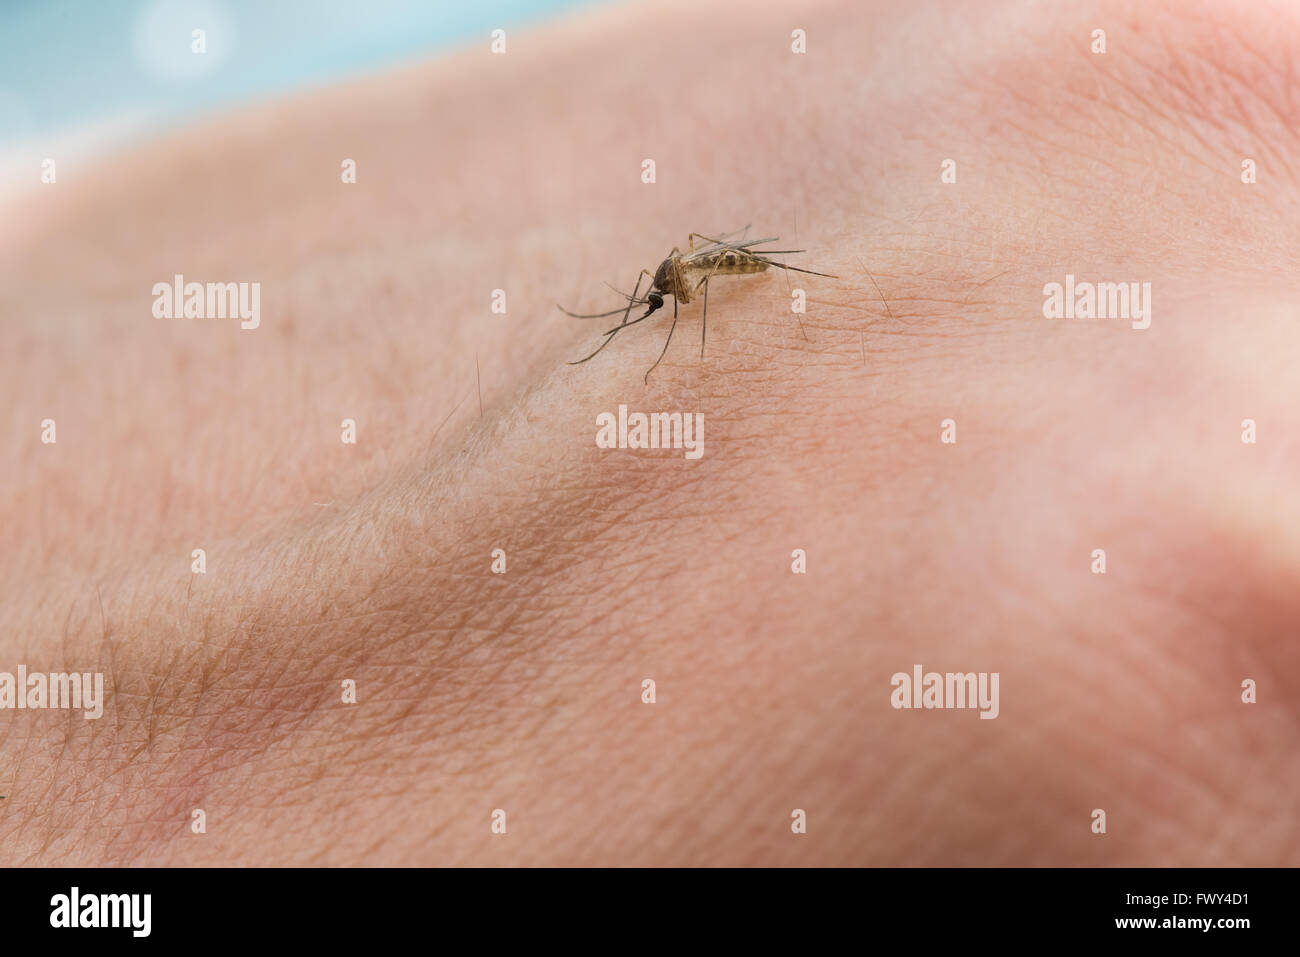 Mosquito sucking blood Stock Photo